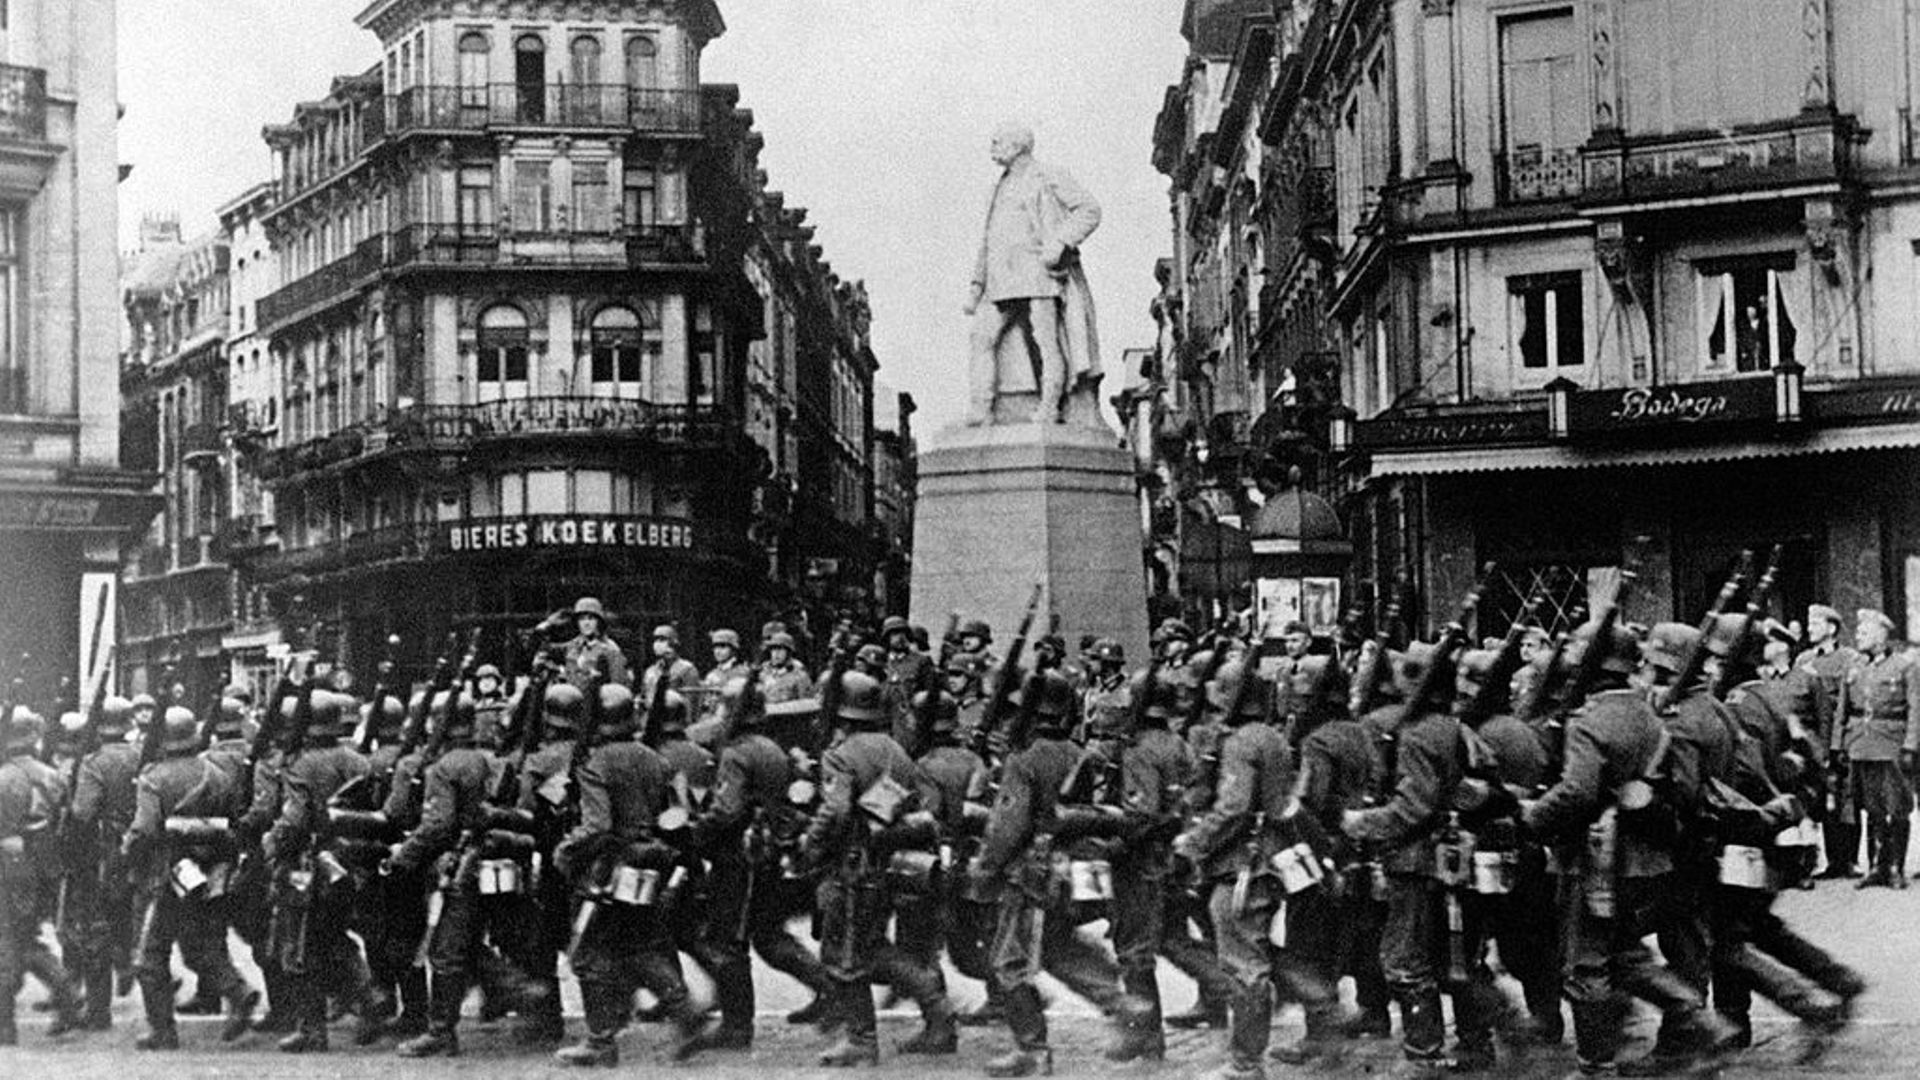 Les troupes allemandes paradent à Bruxelles le 18 mai 1940. La GFP, reconstituée depuis le début de la guerre, va pouvoir exercer son pouvoir en Belgique.